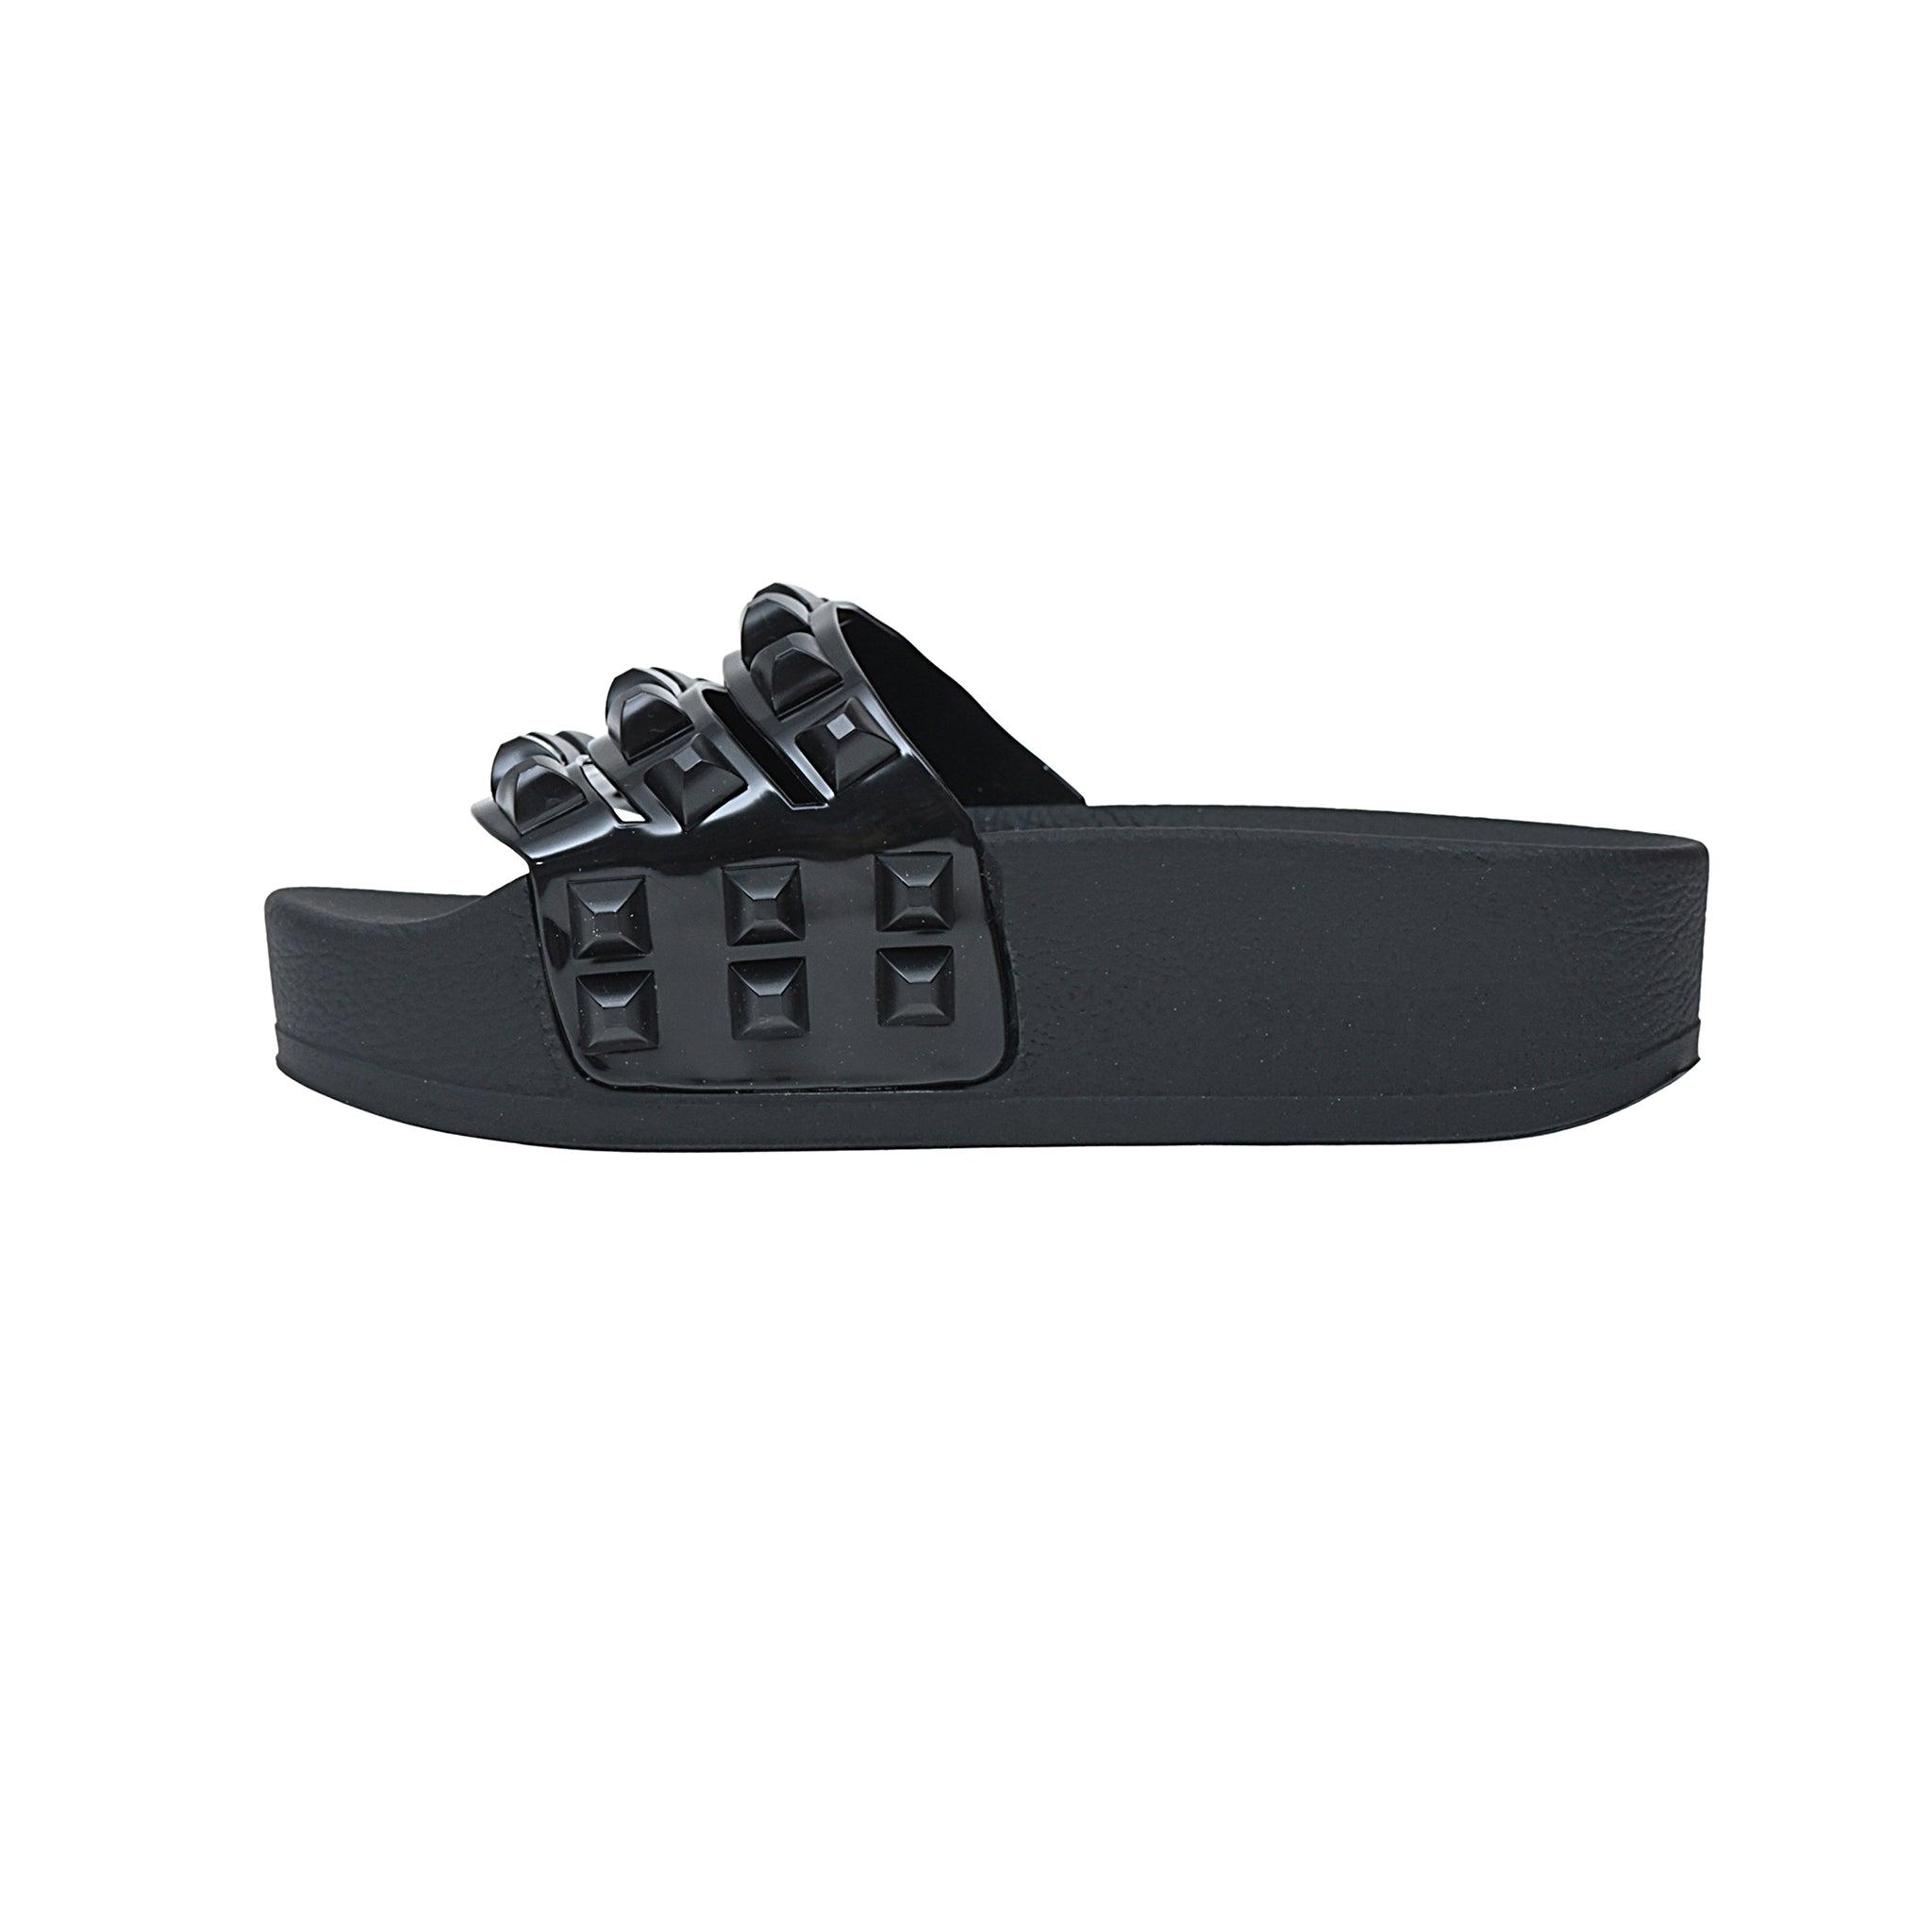 Carmen Sol Carmen Platform Slides Sandals in Black | Lyst